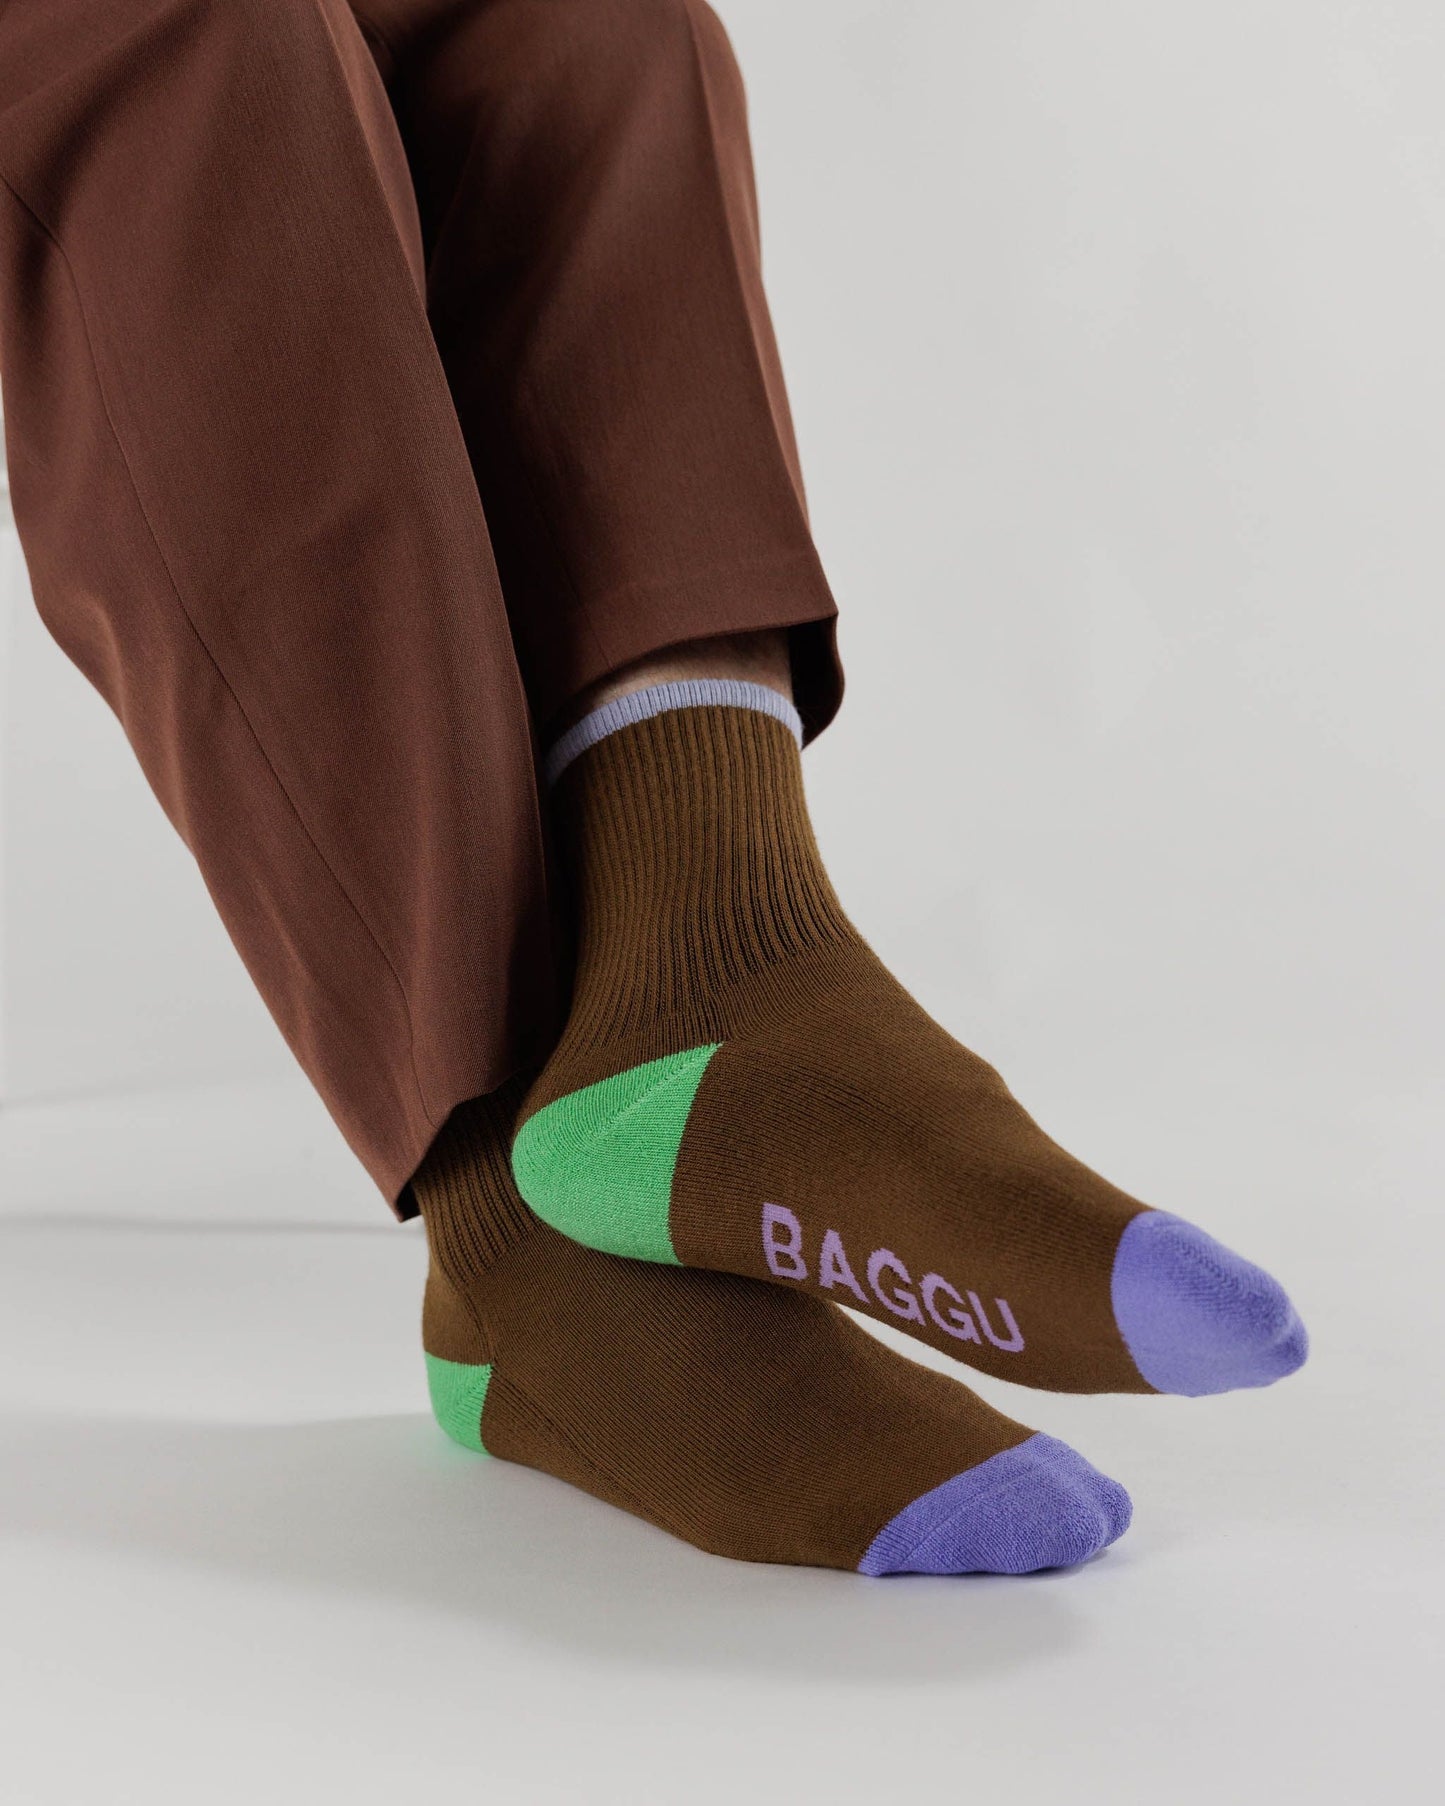 Baggu Ribbed Socks - Tamarind Mix